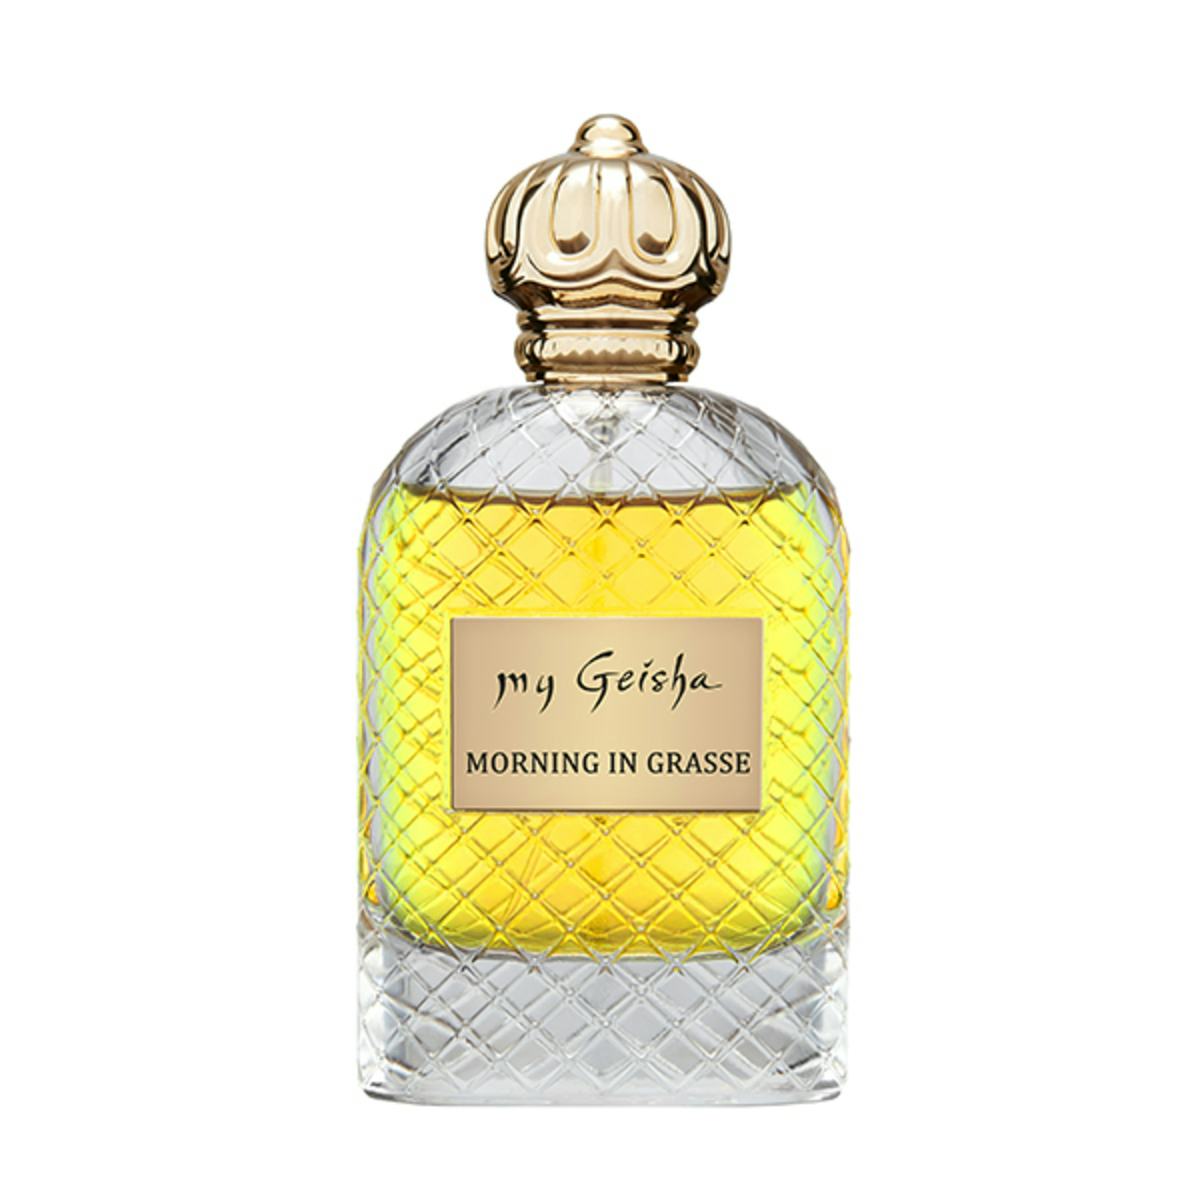 Extrait de parfum "Morning in Grasse" 100 ml, handwerkliches Produkt für den Direktverkauf in der Schweiz